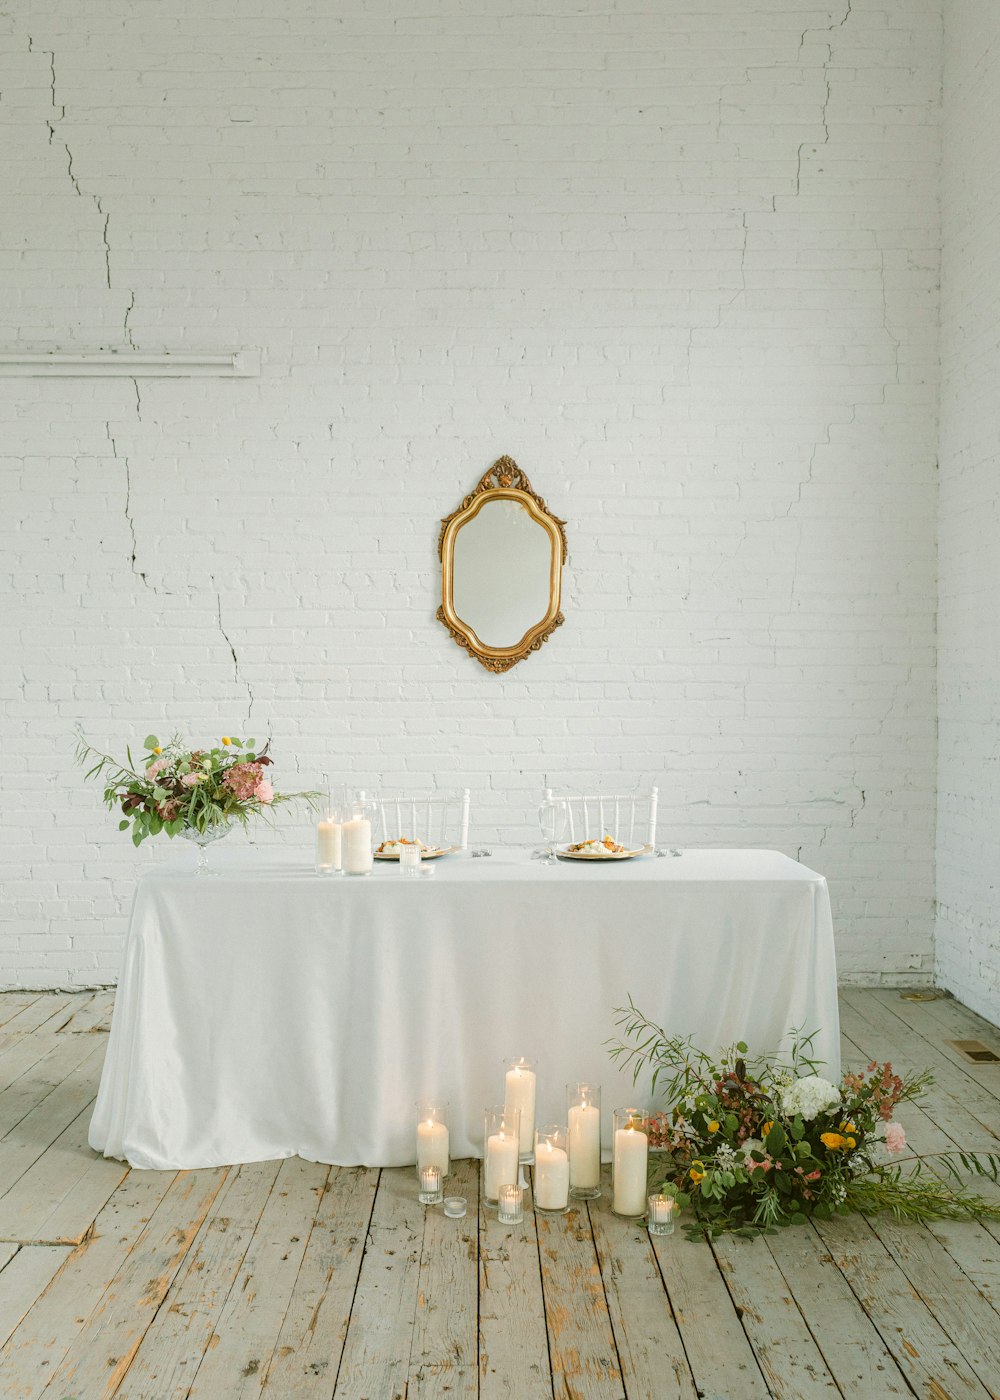 蝋燭と鏡のある白いテーブル